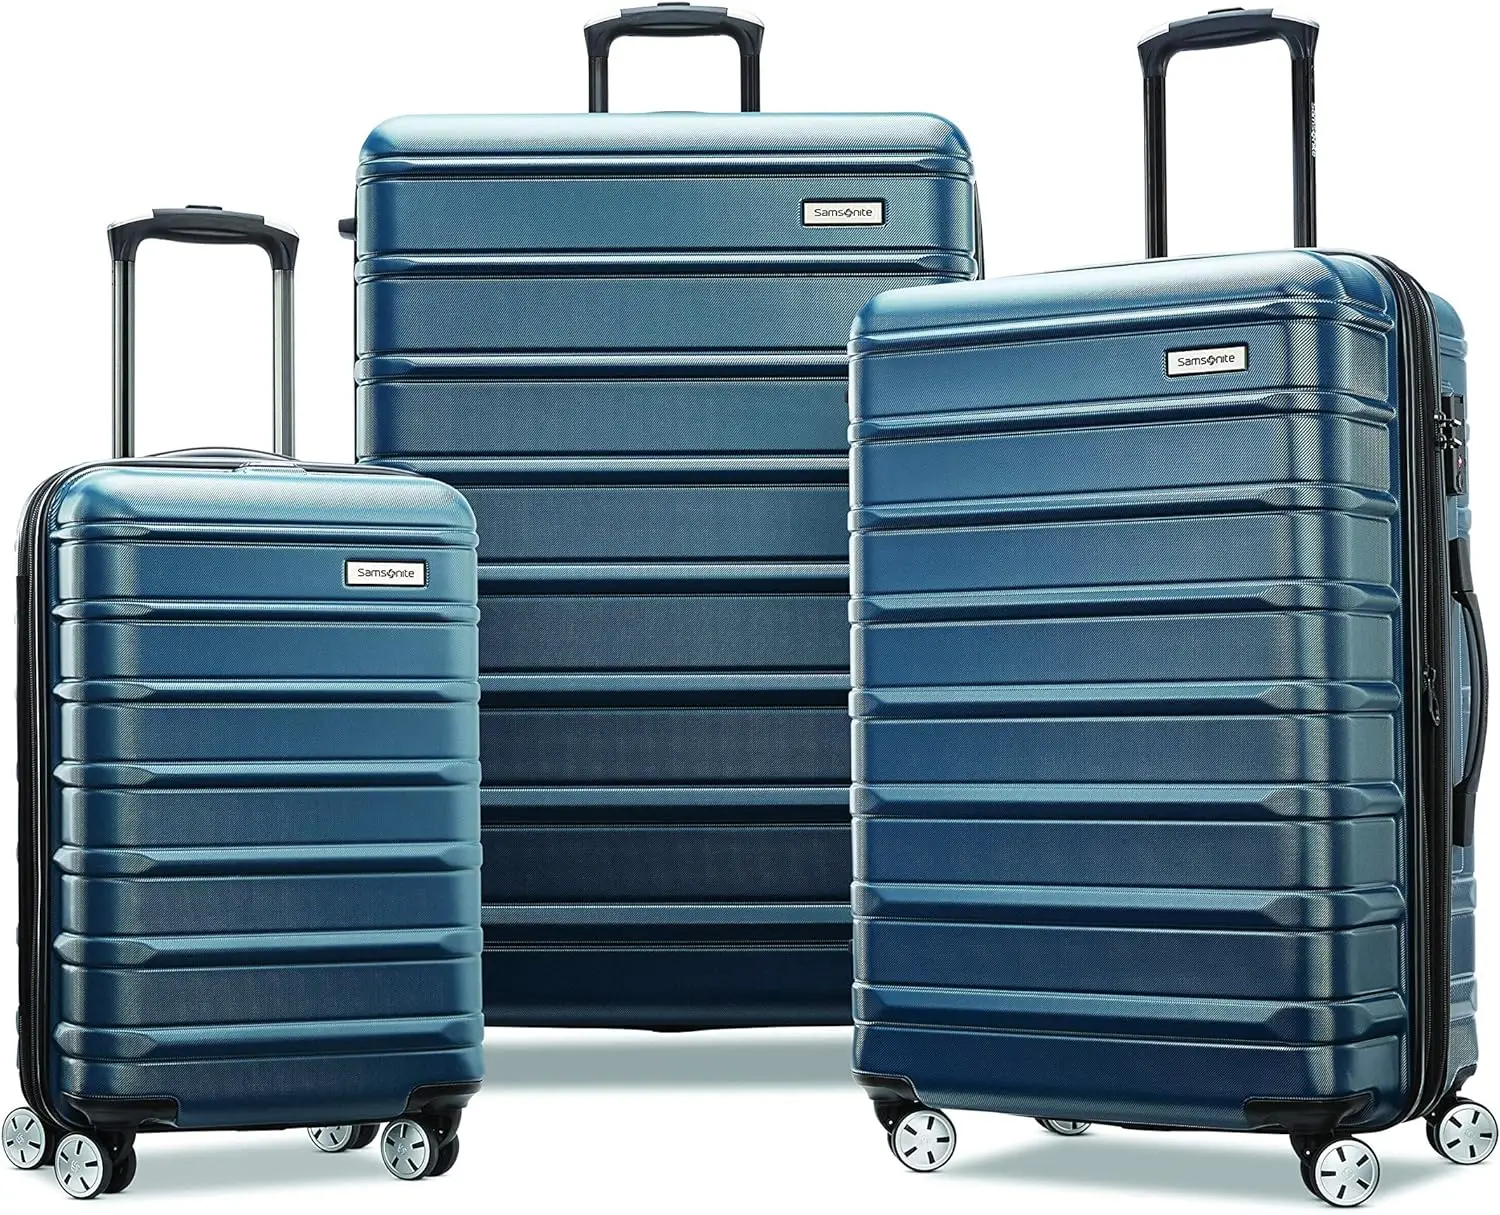 

Samsonite Omni 2 жесткий расширяемый чемодан с колесами-спиннером, набор из 3 предметов (20/24/28), Nova Teal